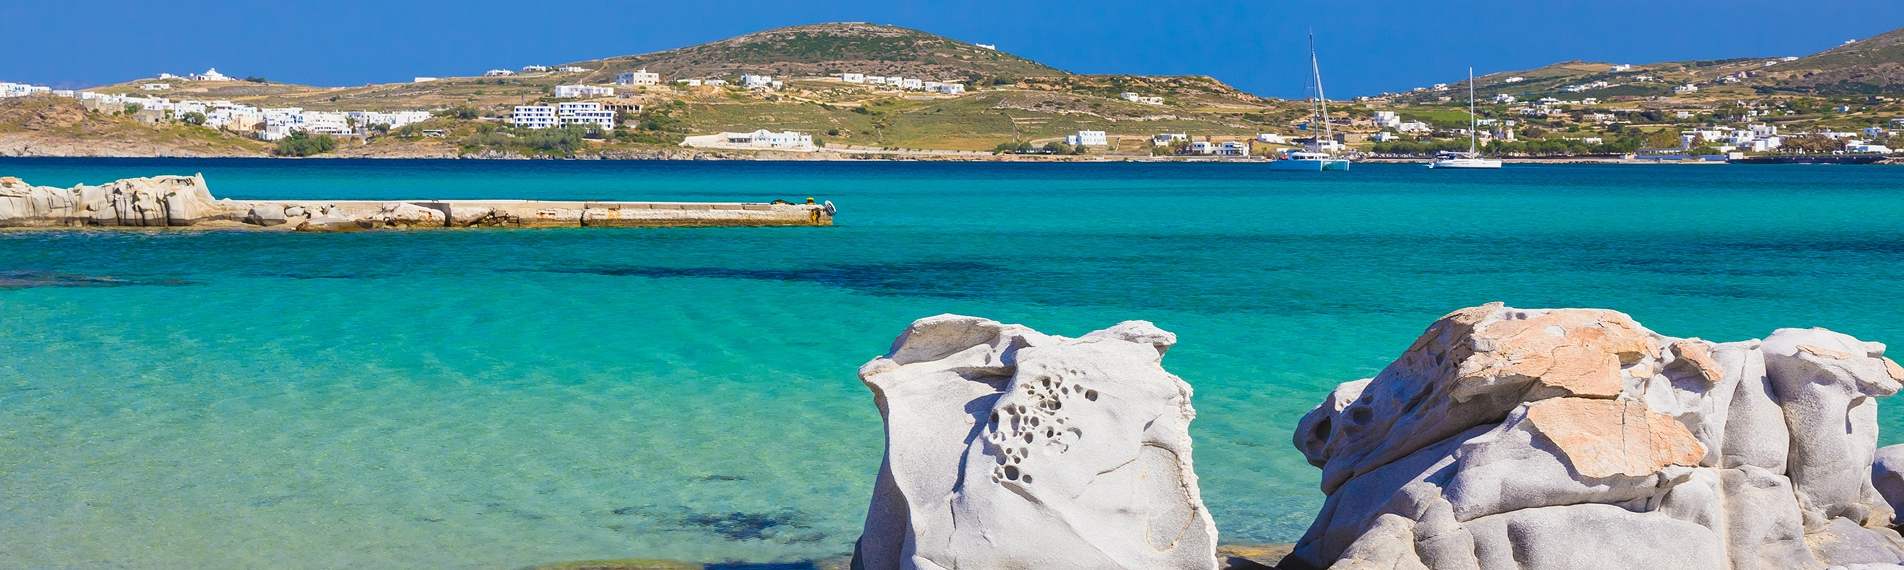 Paisaje del mar de Paros: aguas cristalinas y rocas blancas